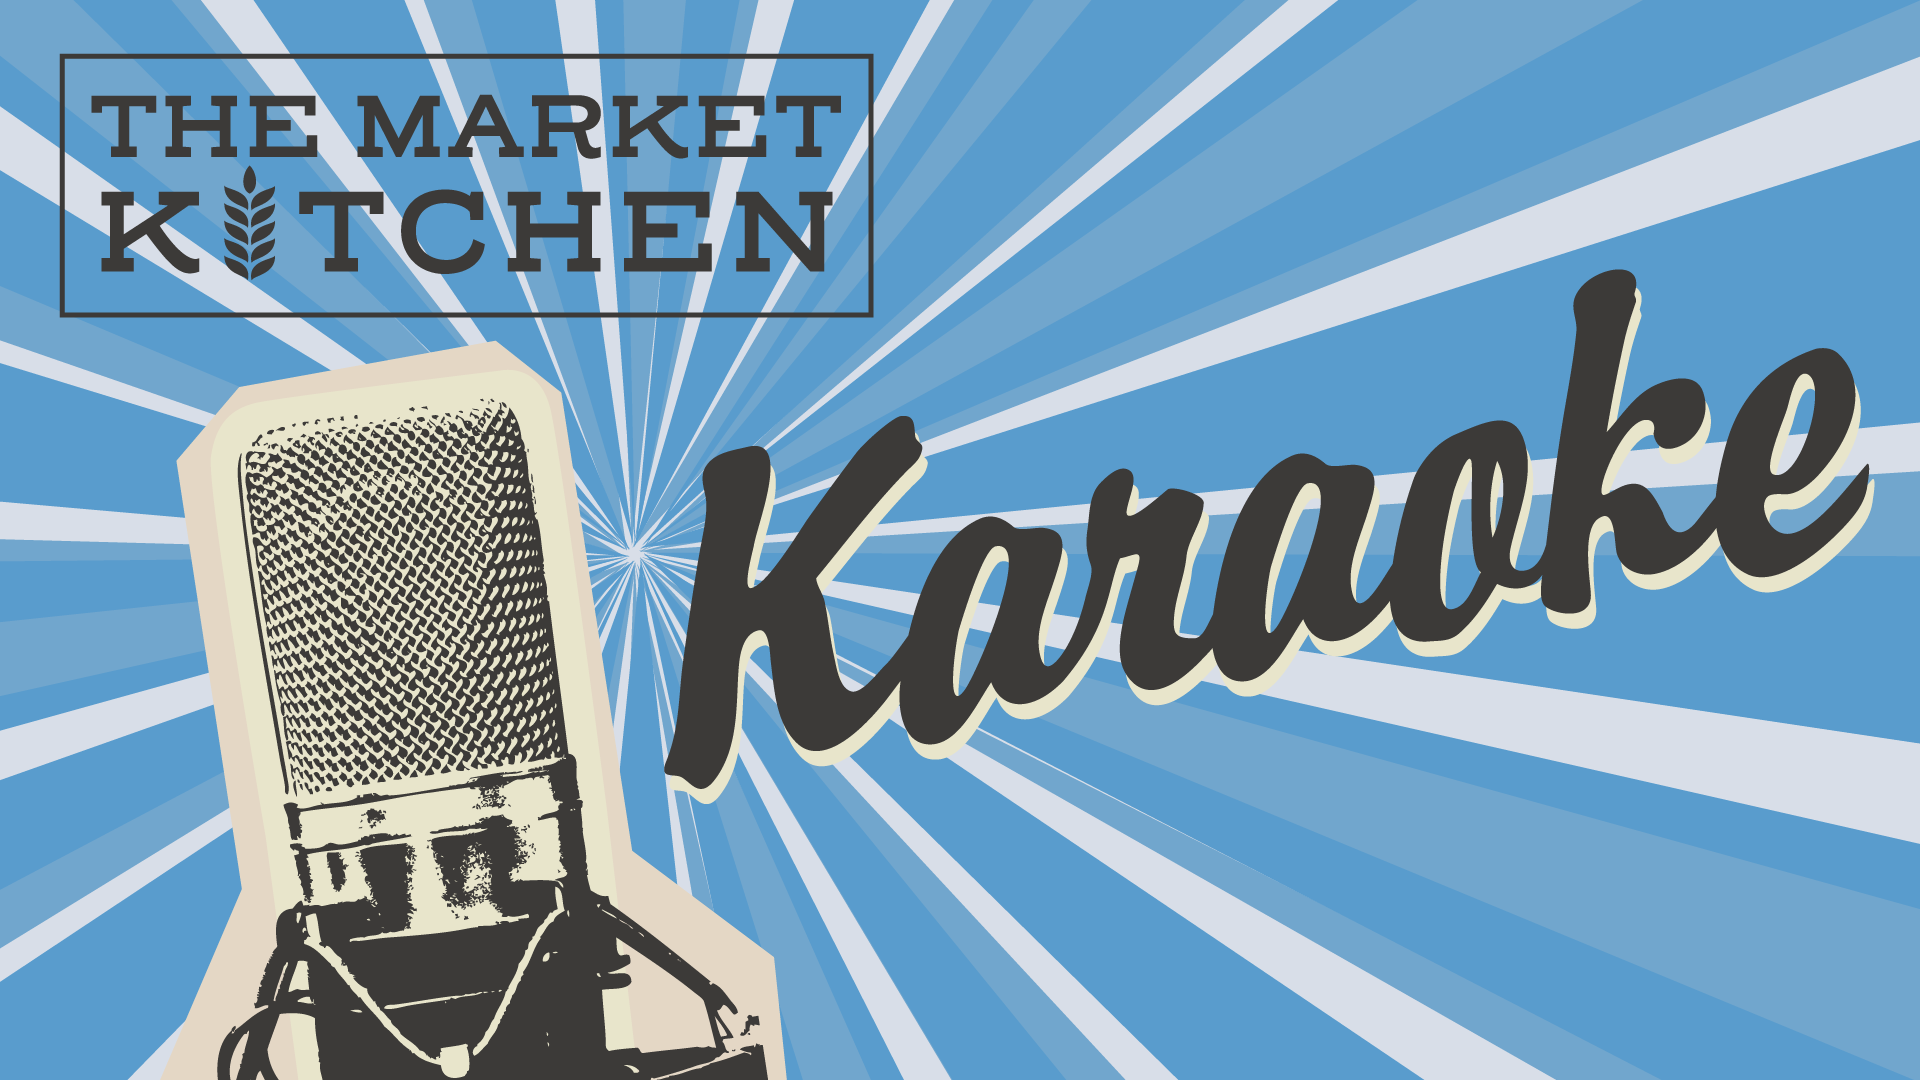 Karaoke Night In the Market Kitchen